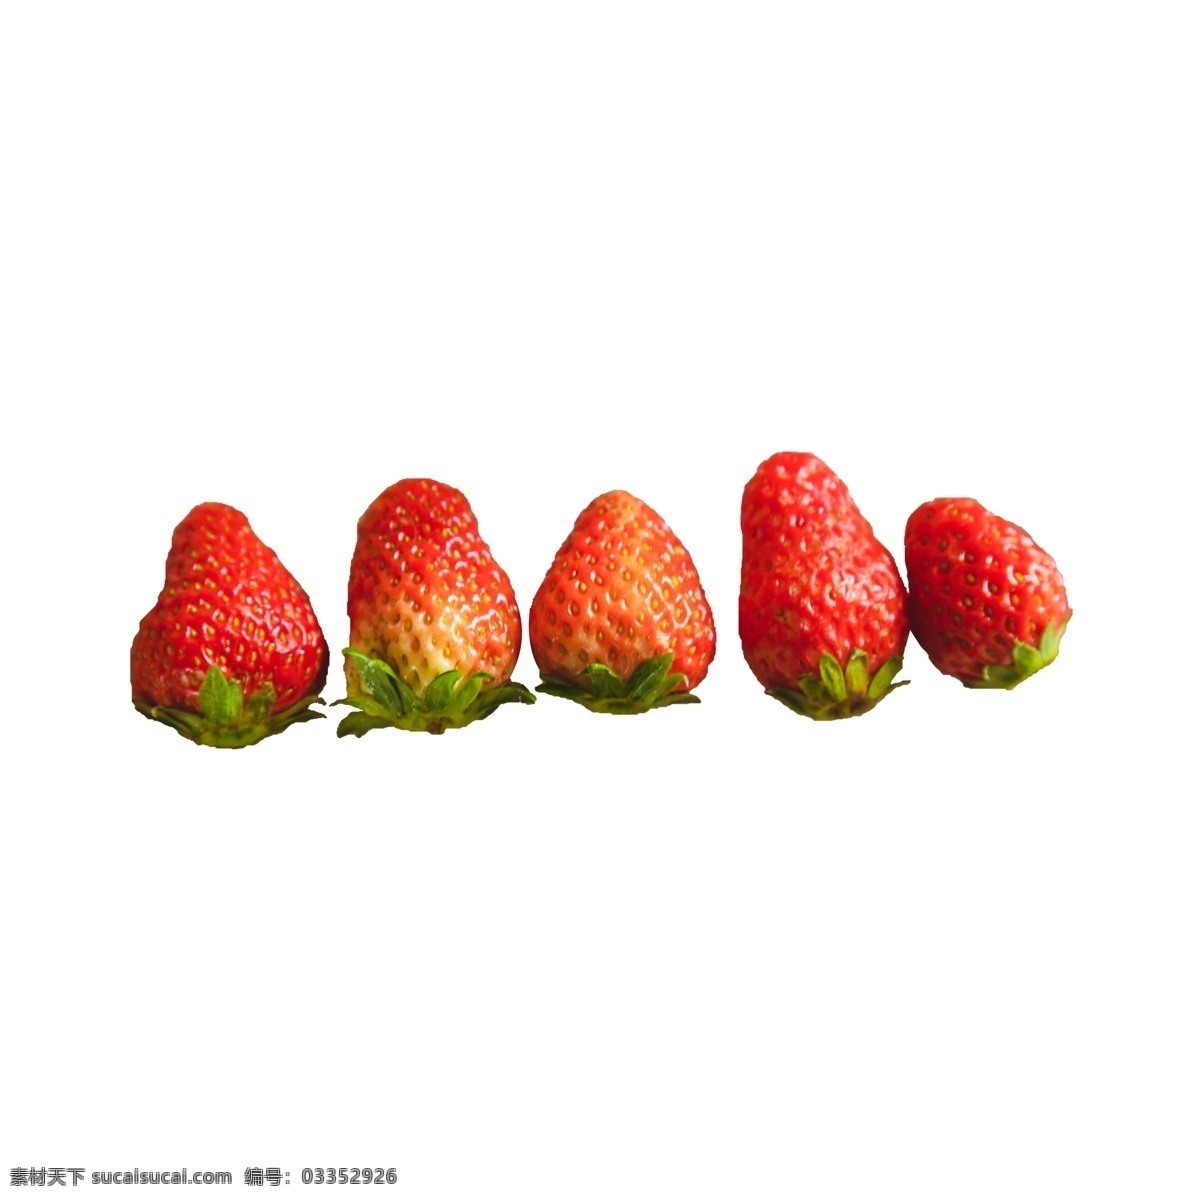 五 新鲜 草莓 五个草莓 水果 奶油草莓 绿叶 植物 一排 排列 营养 维生素 美味 甜食